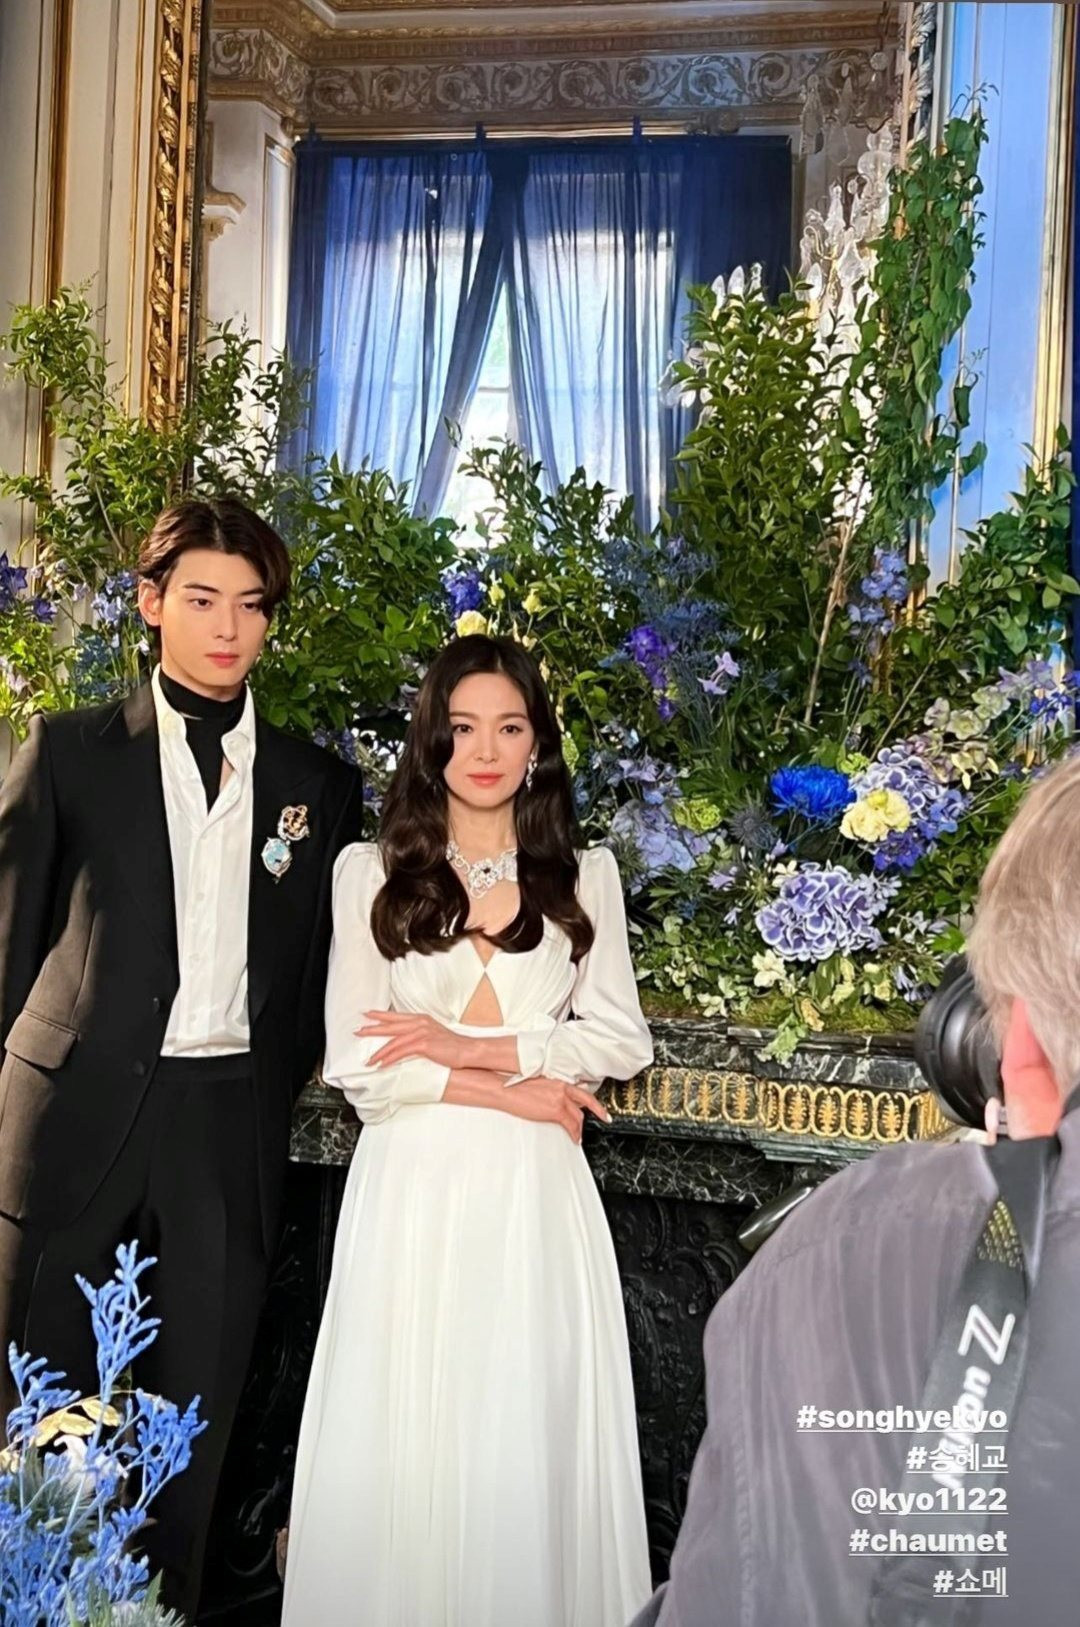 Hôn lễ của Song Hye Kyo và Bi Rain Đều giàu có nhưng đám cưới lại khác  biệt hoàn toàn